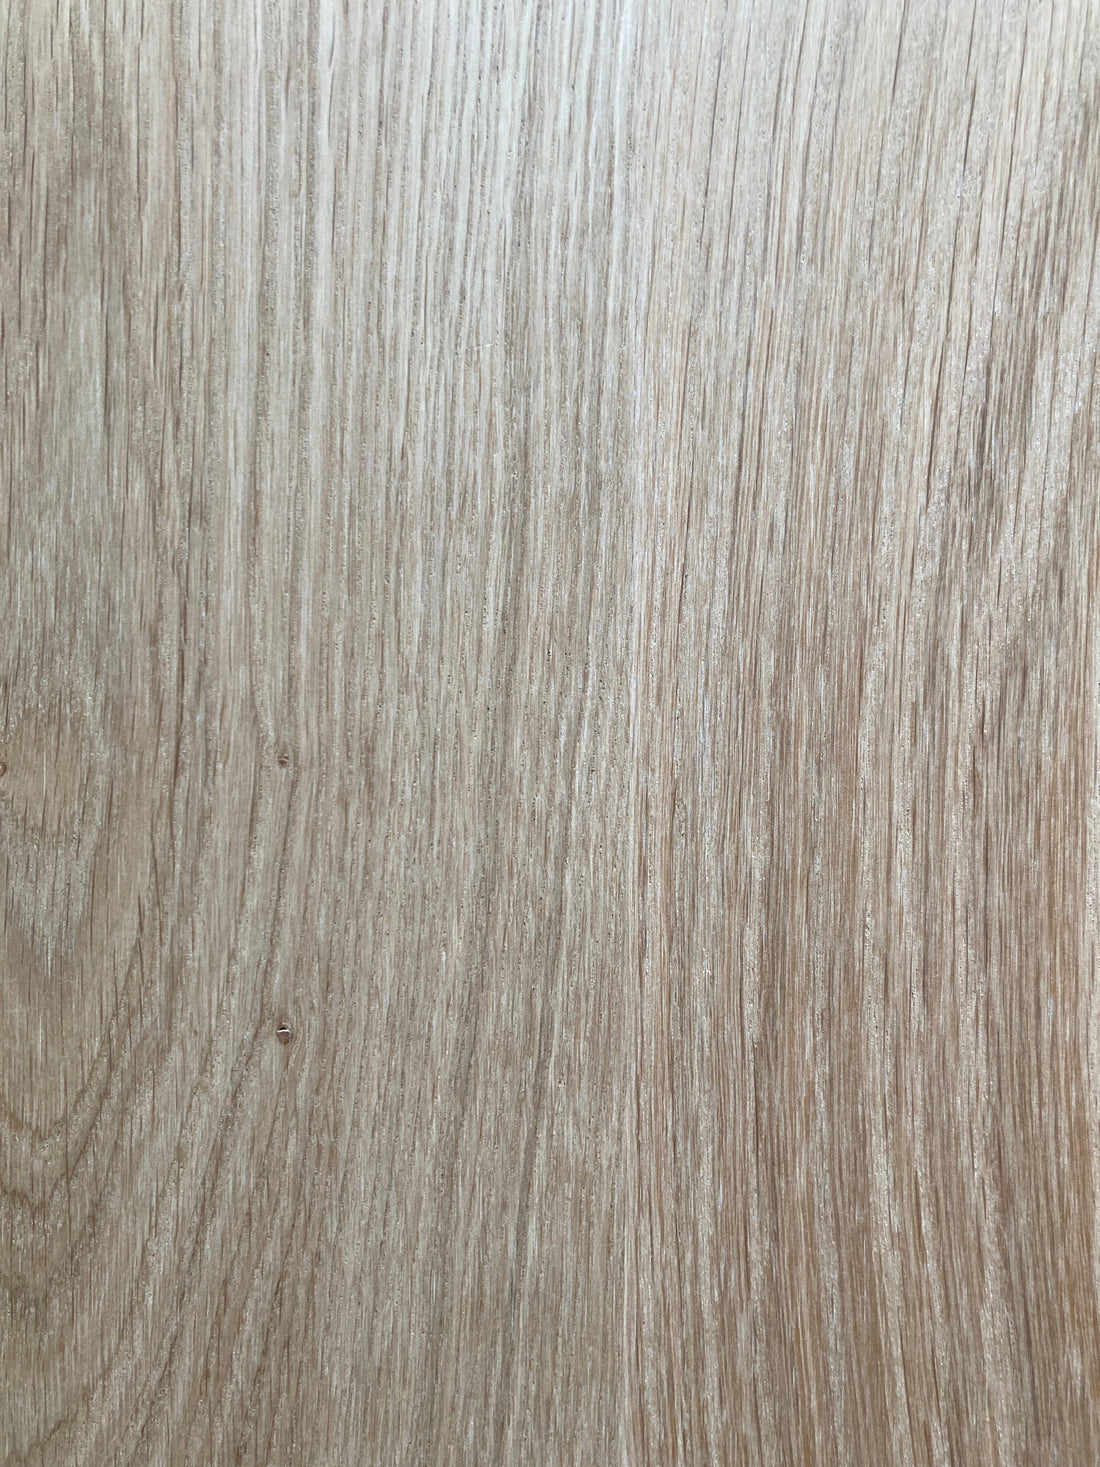 Oak Board 25mm